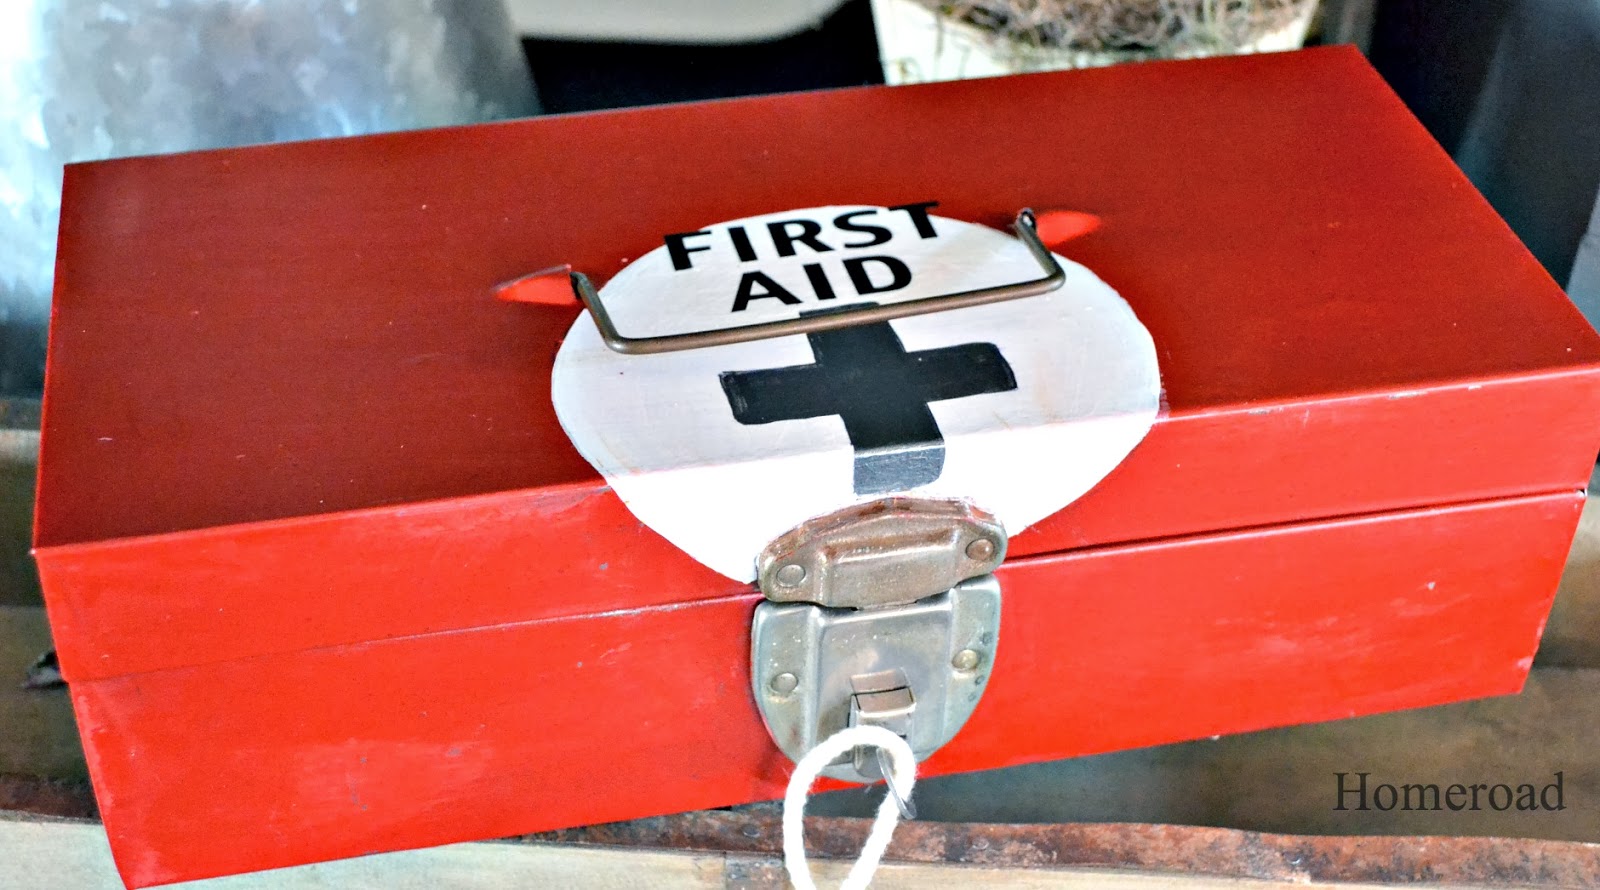 metal first aid box www.homeroad.net